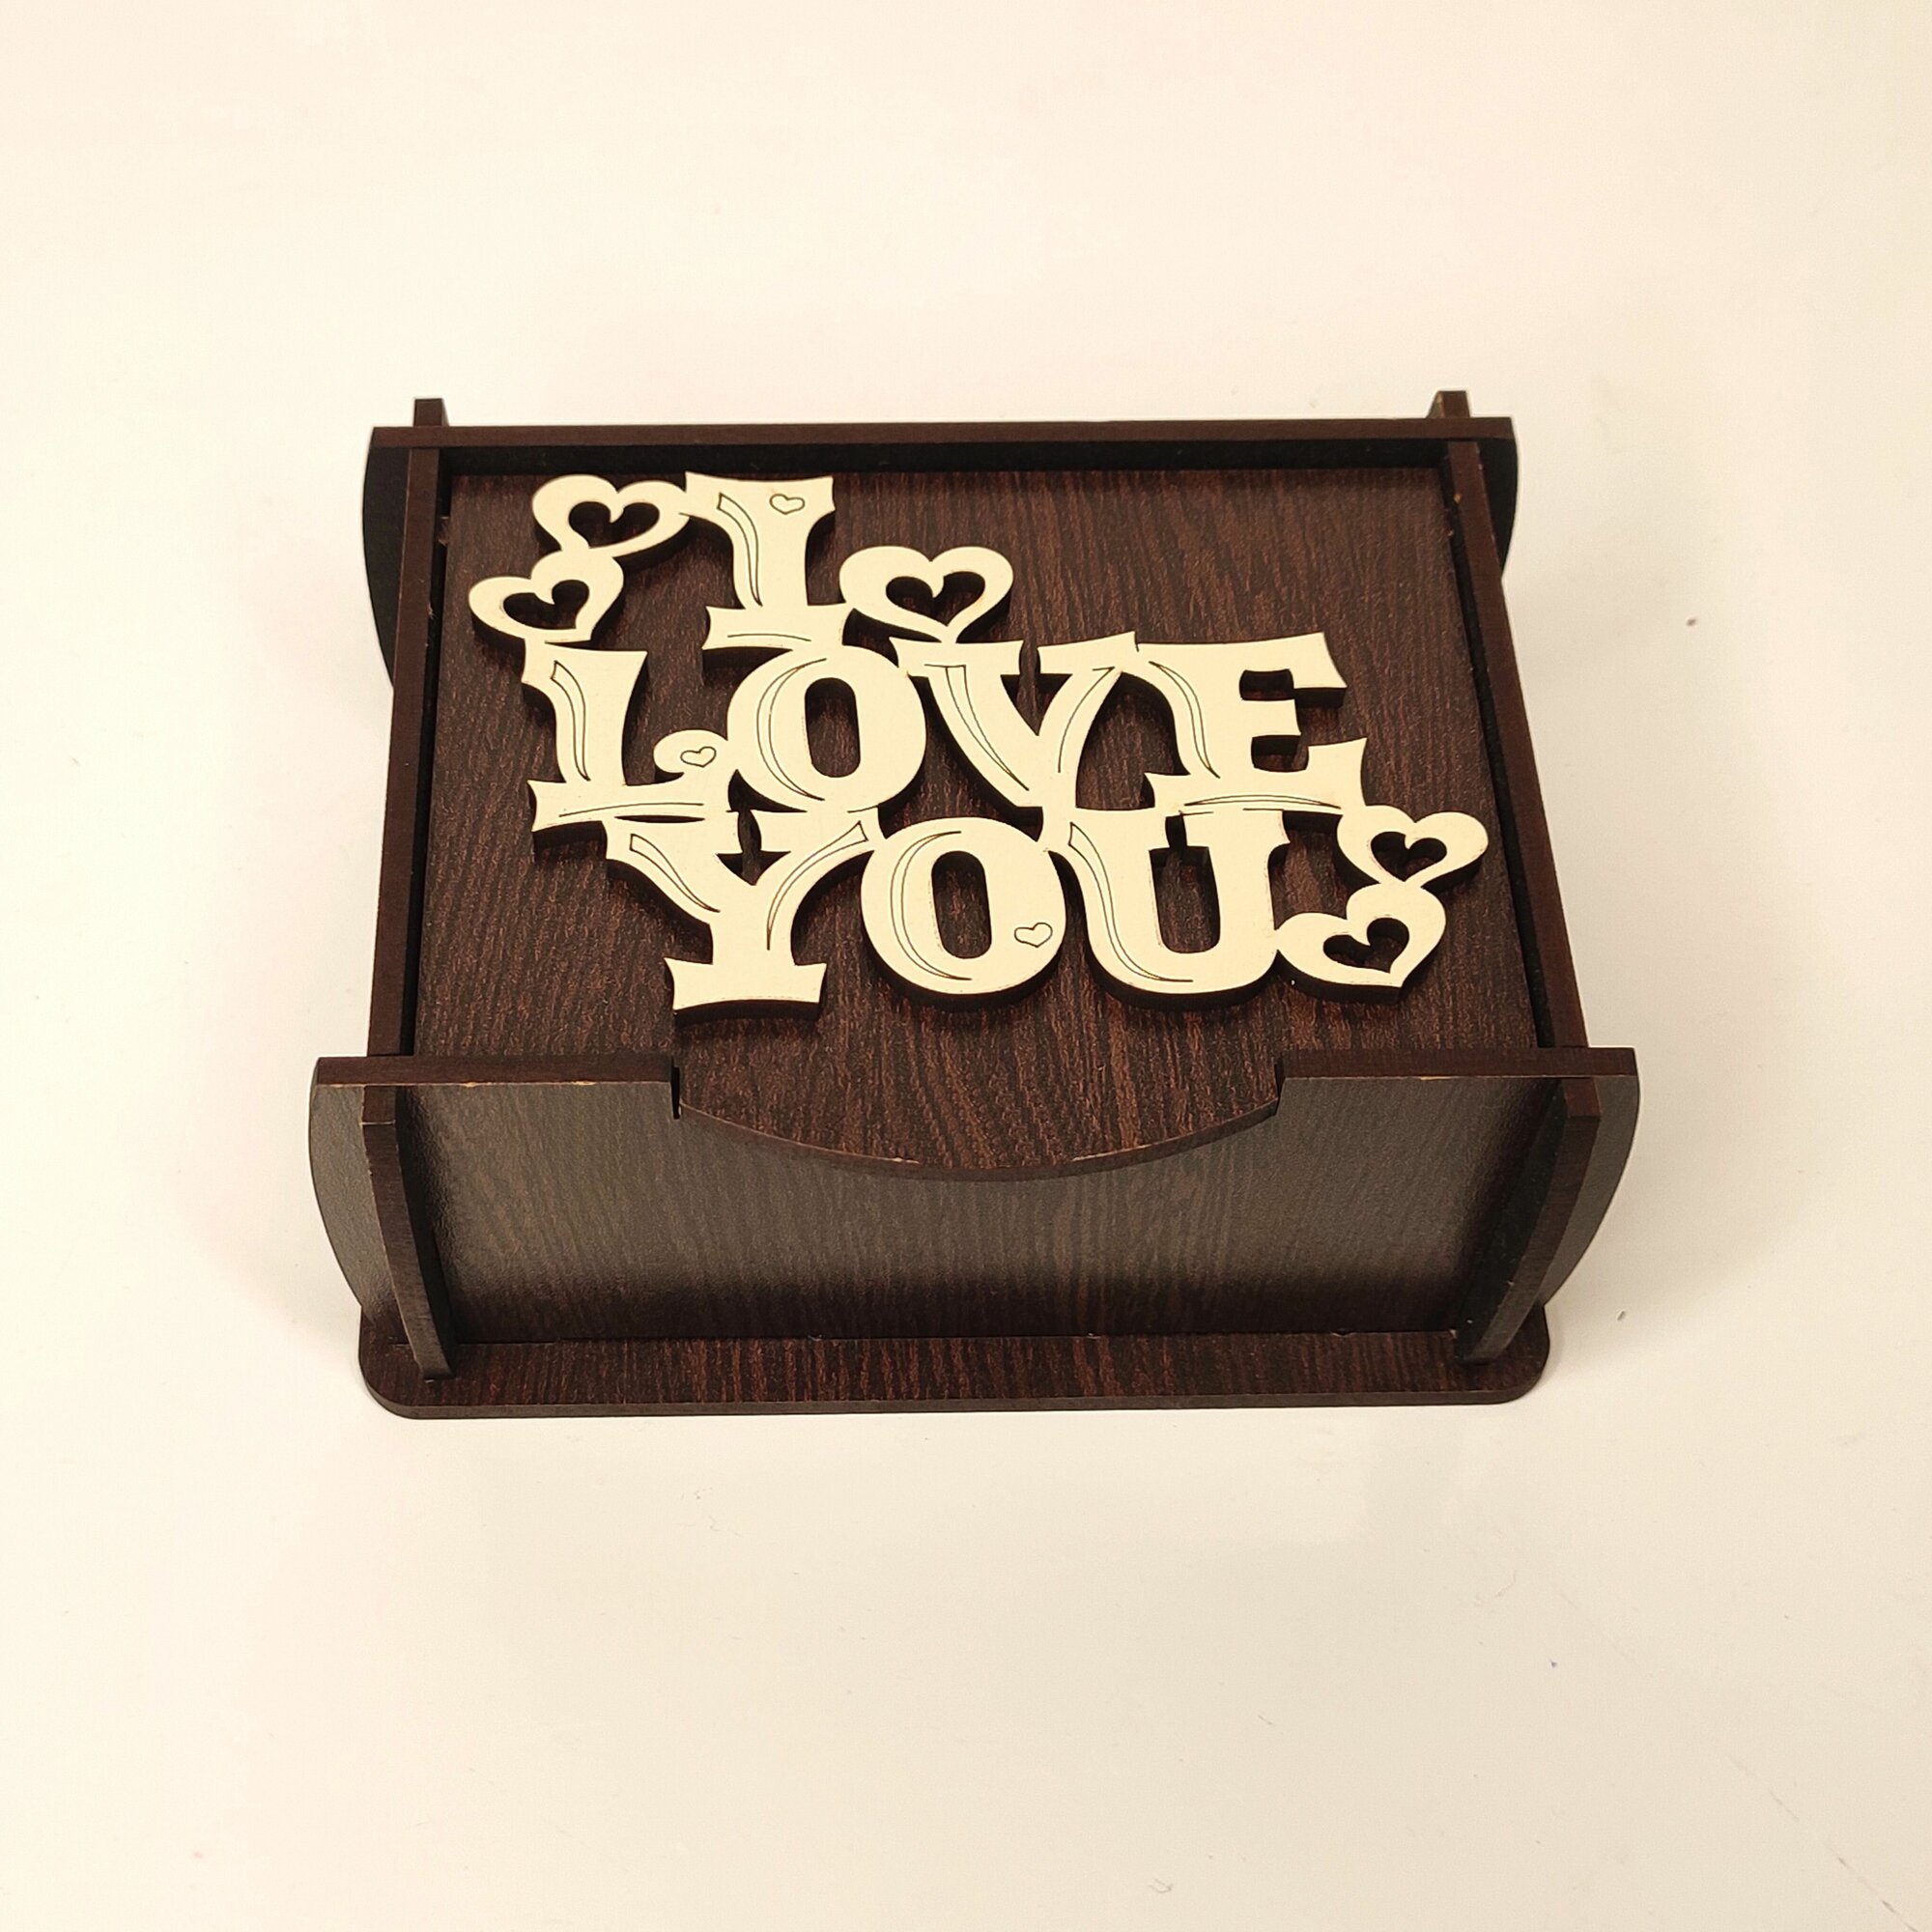 Шкатулка Прямоугольная темная с надписью "I love you"